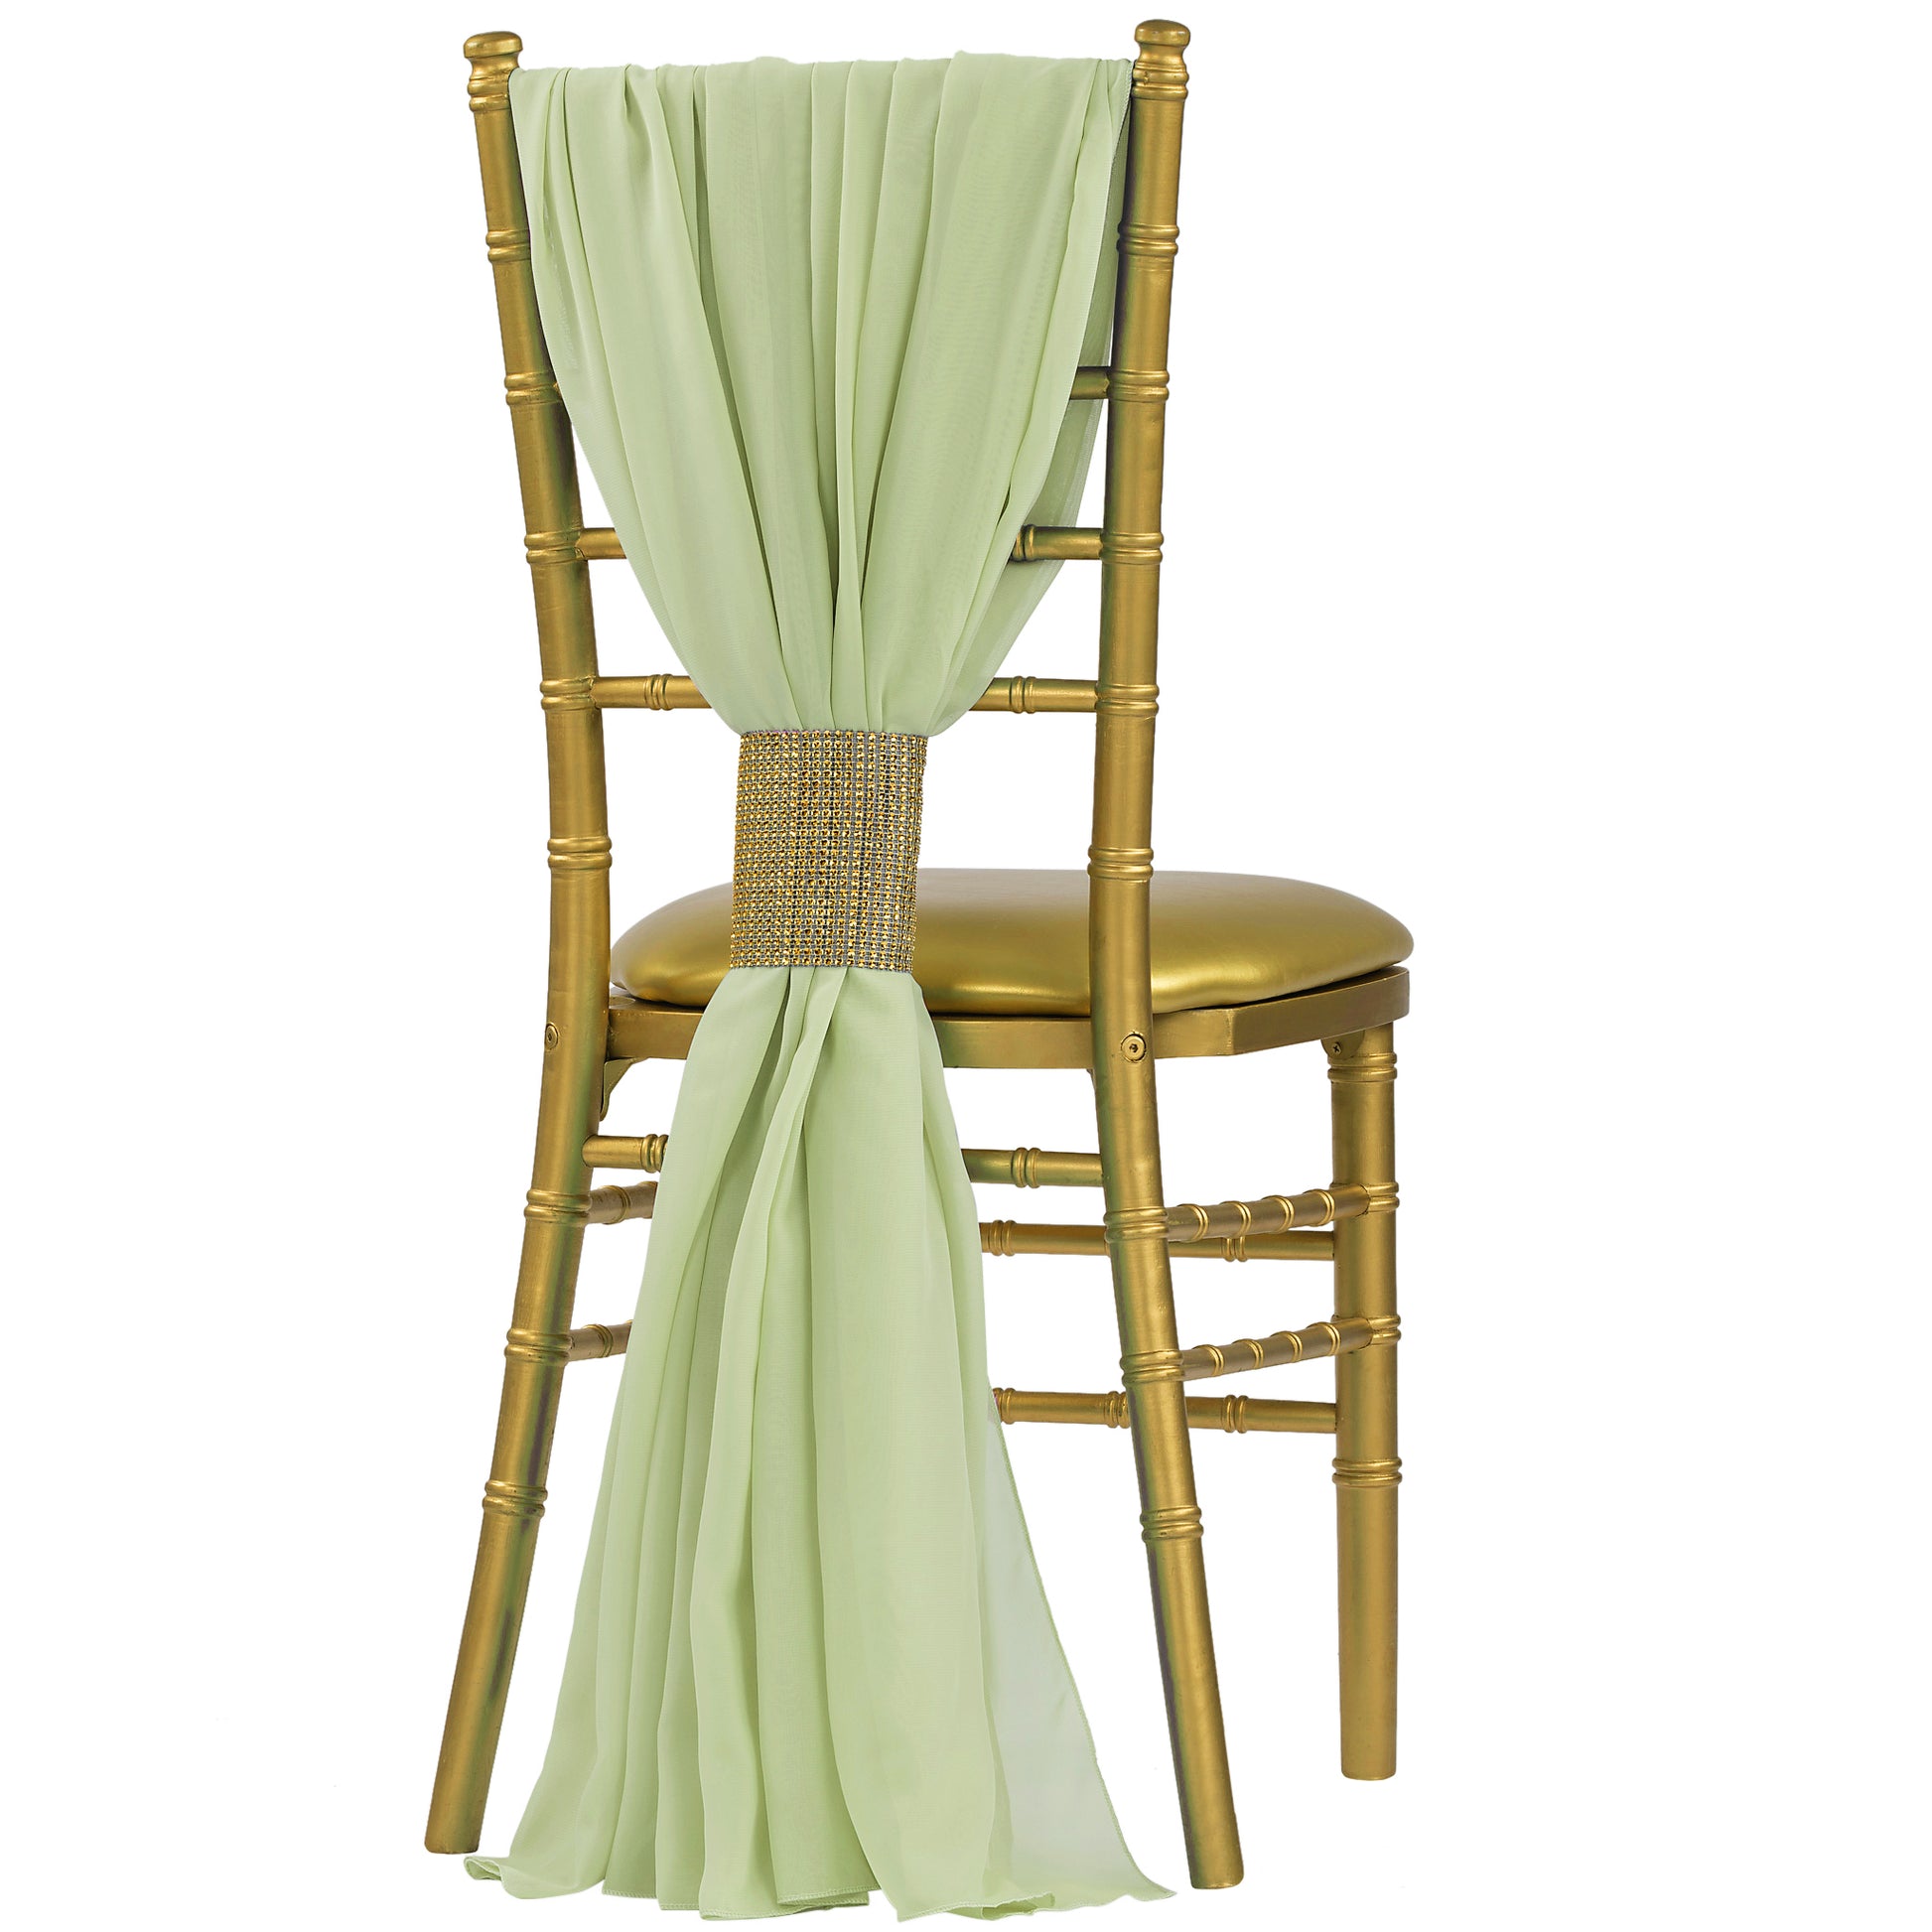 5pcs Pack of Chiffon Chair Sashes/Ties - Sage Green - CV Linens